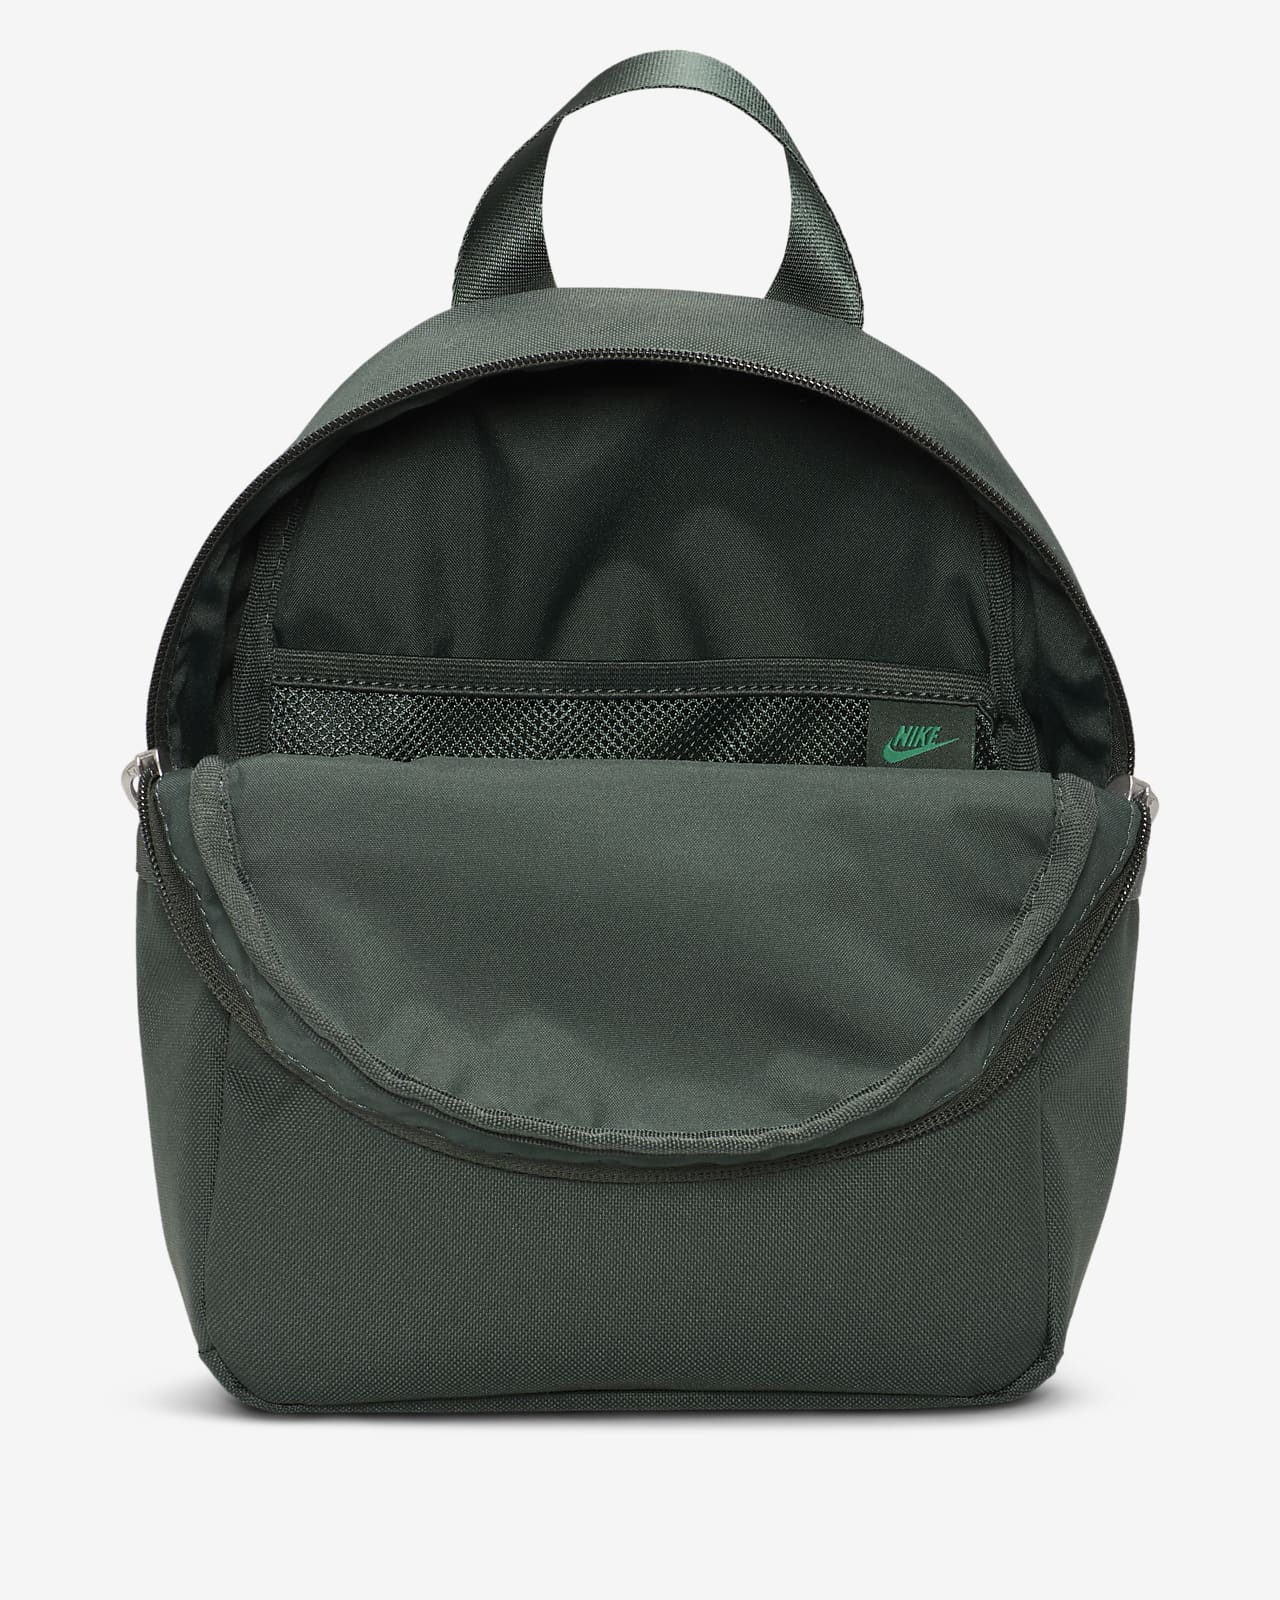 Women PU Leather Mini Backpack Purse Adjustable Strap Shoulder Travel  Rucksack | eBay